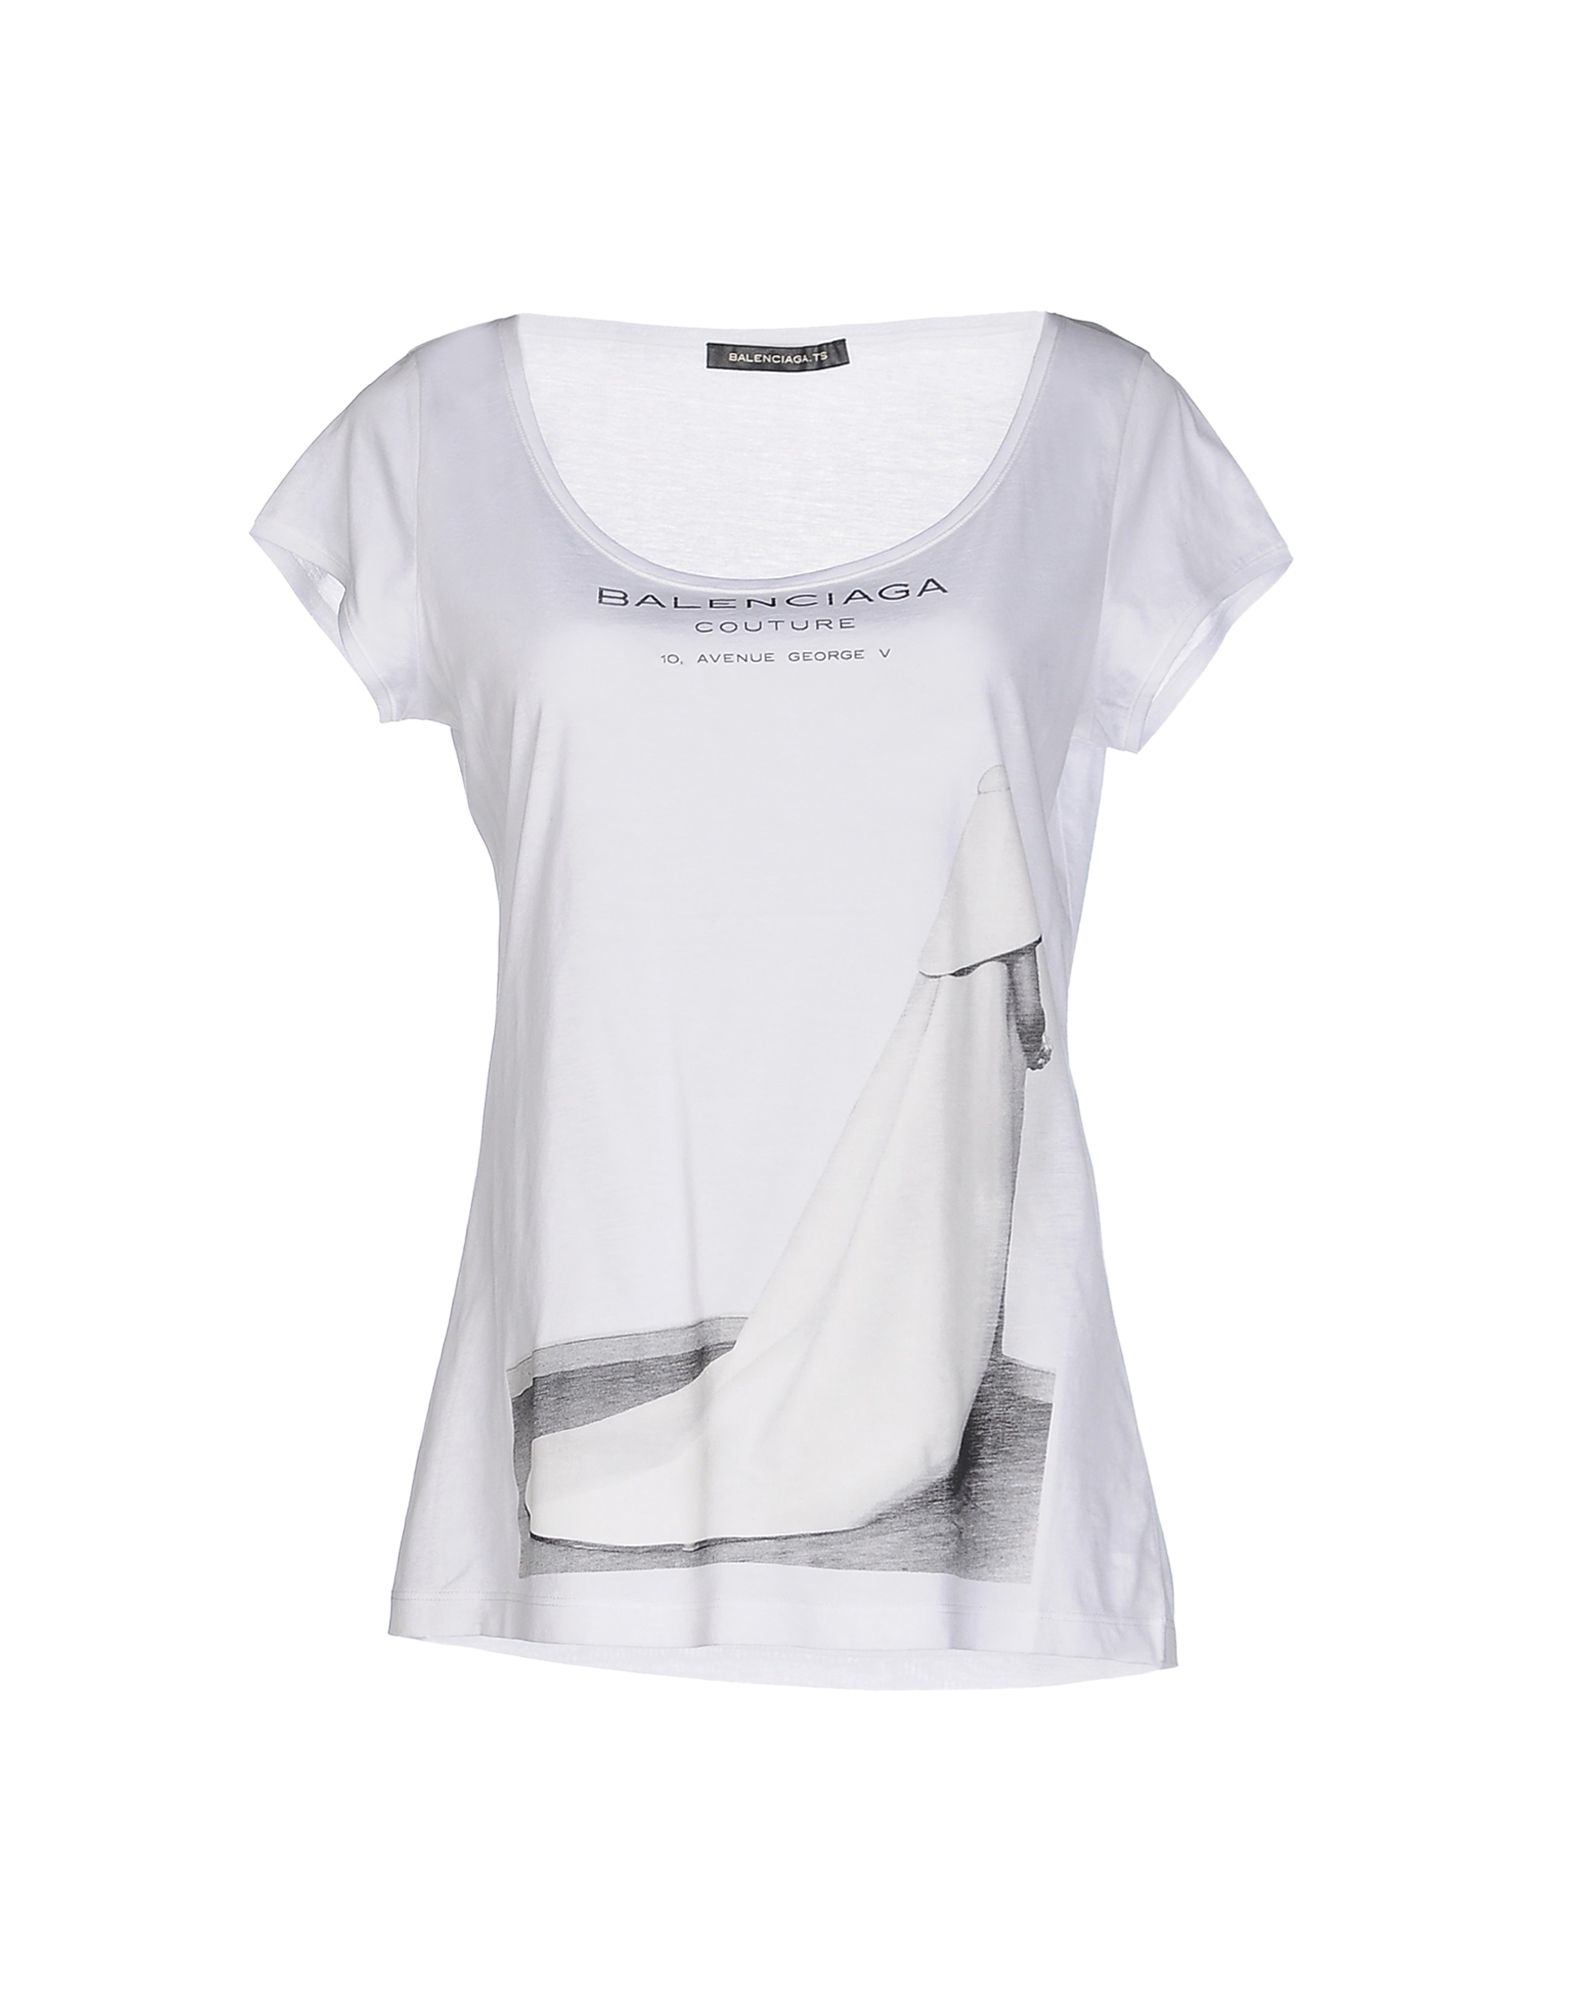 Lyst - Balenciaga T-shirt in White